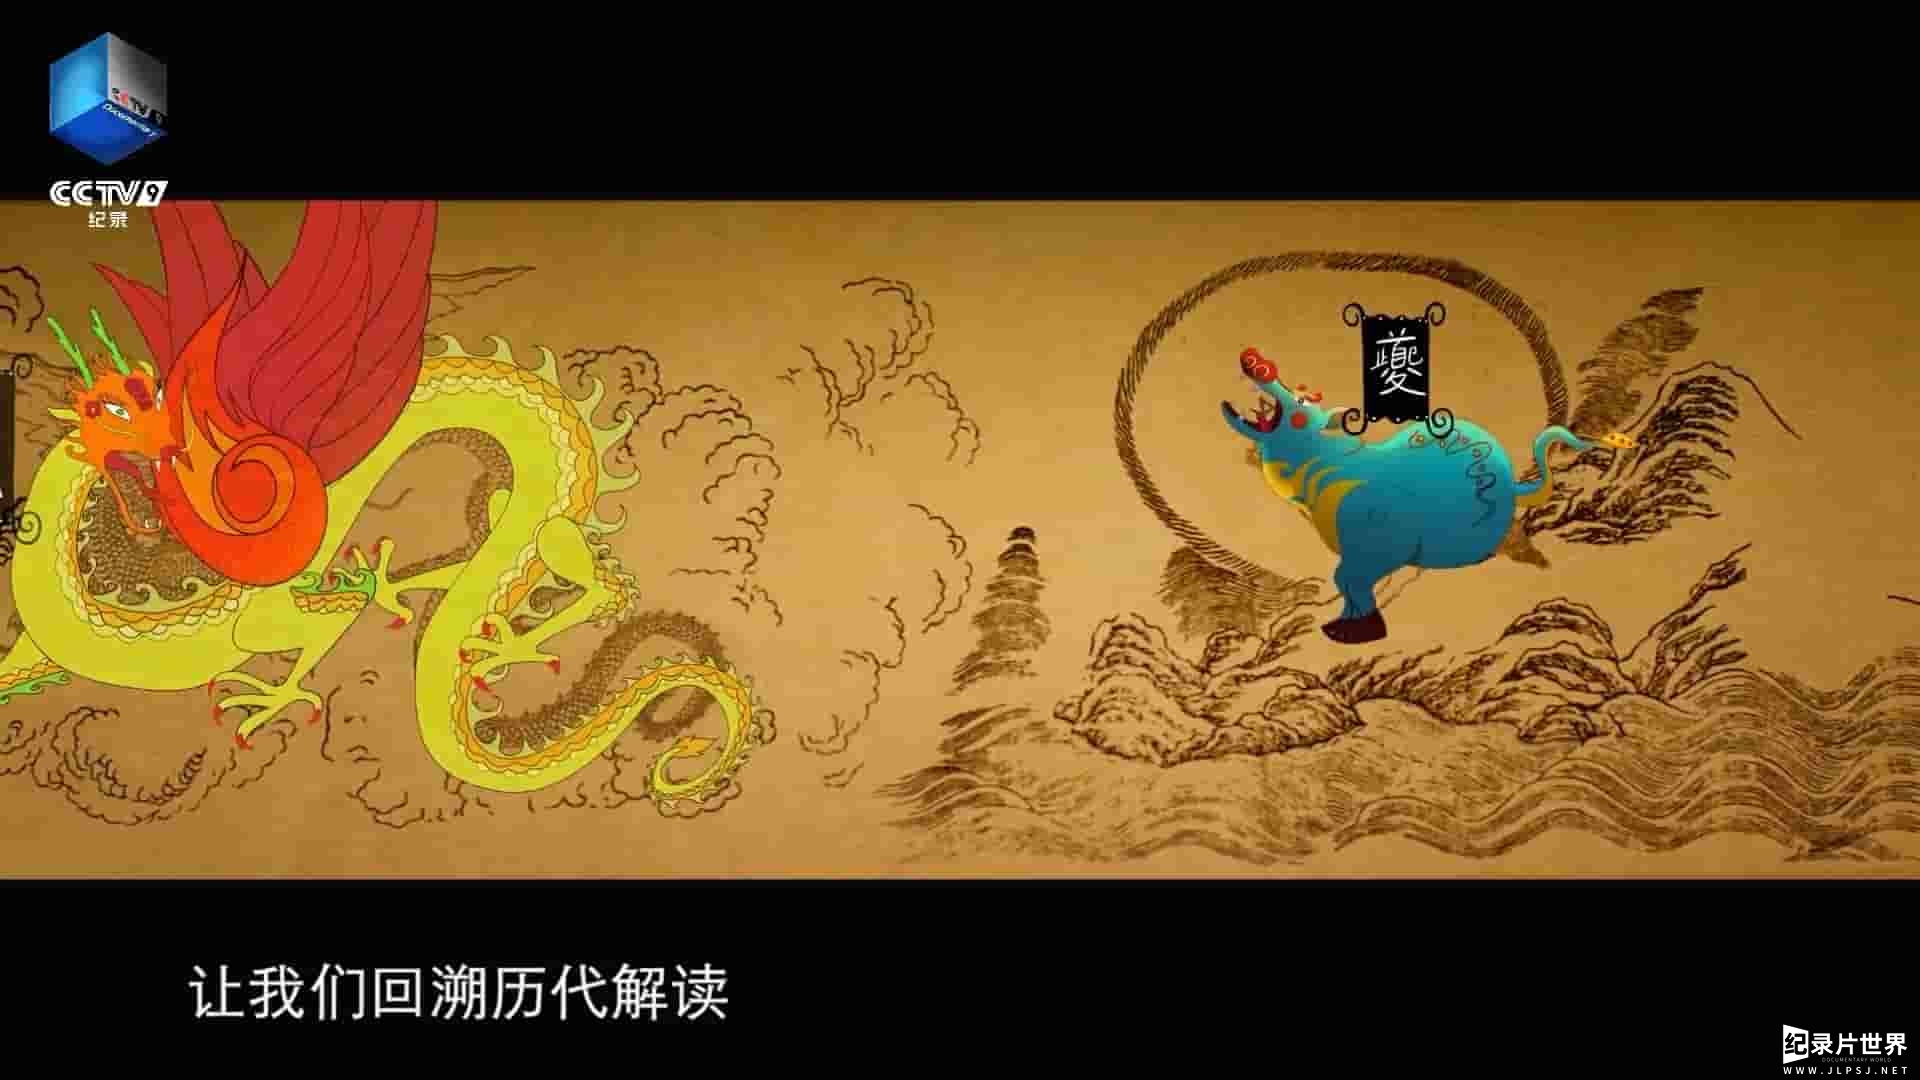 央视纪录片《山海经奇/山海经/奇兽/奇人/奇事 A Hazy Dream World from Ancient China 2023》全8集